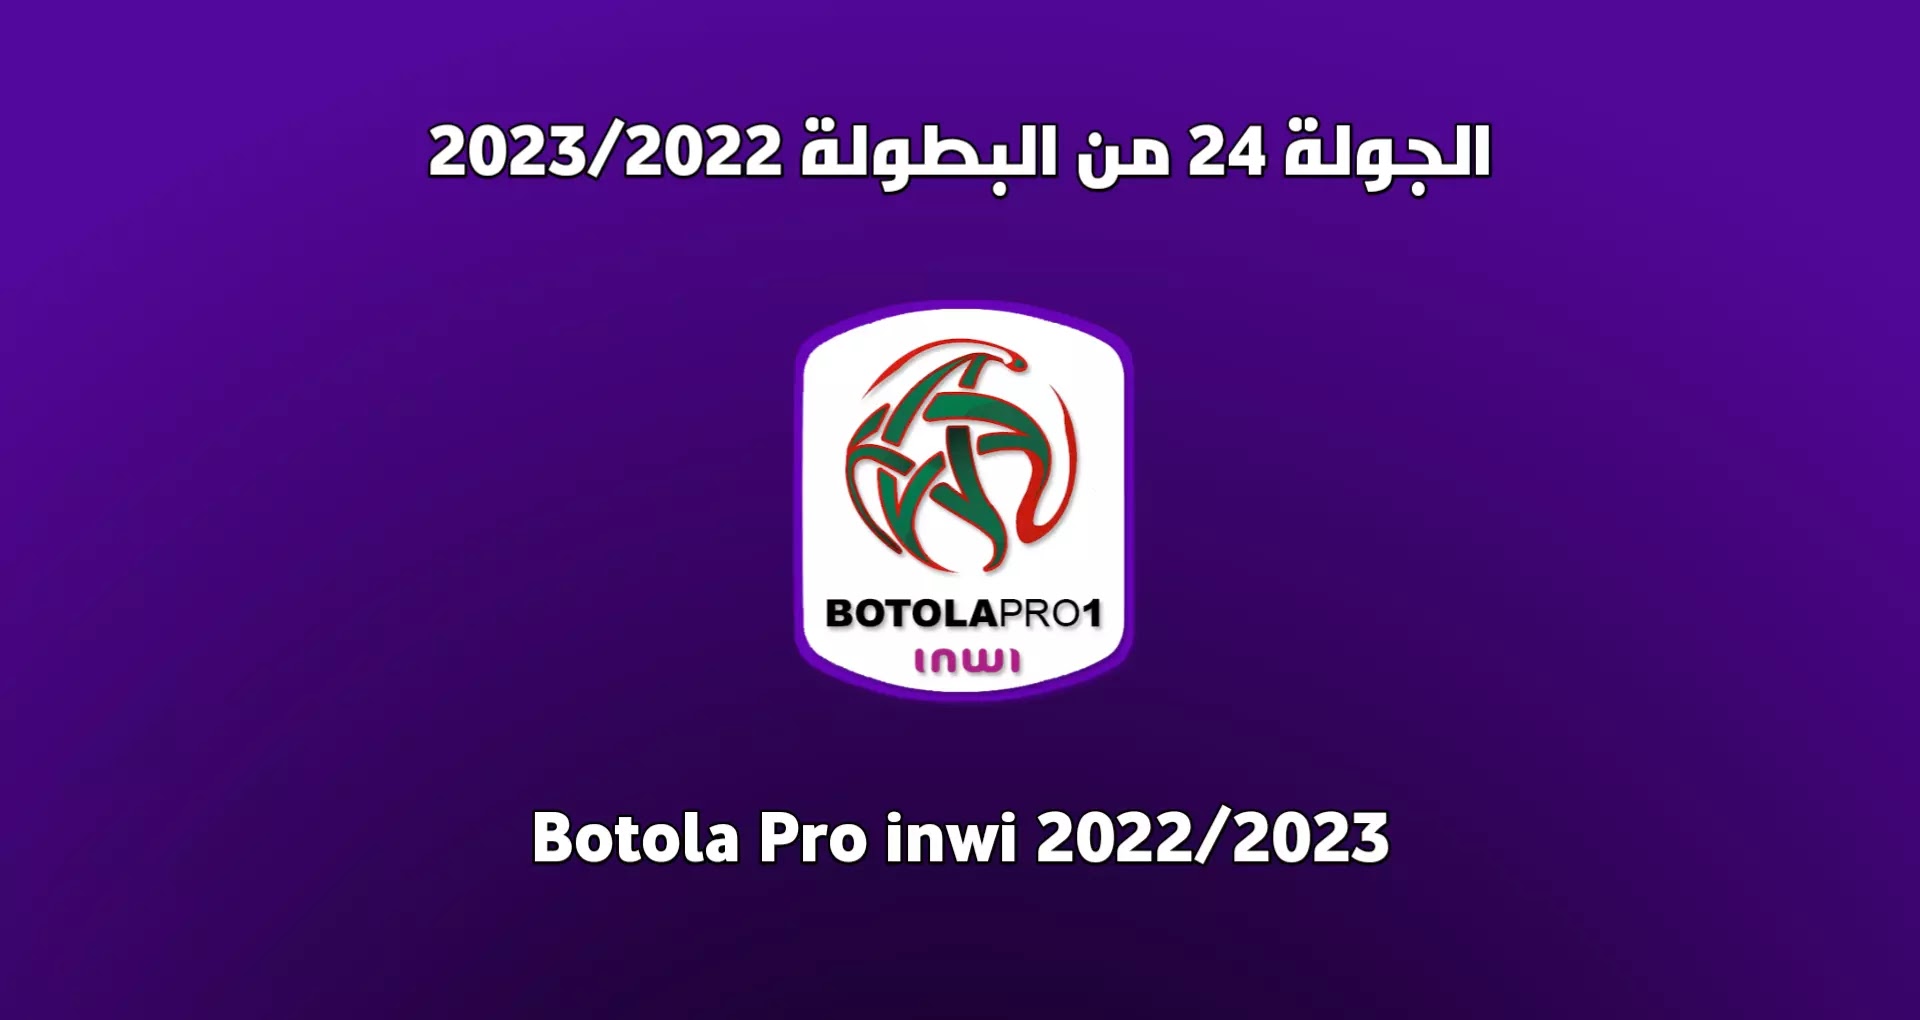 برنامج الجولة 24 من البطولة المغربية 2023/2022